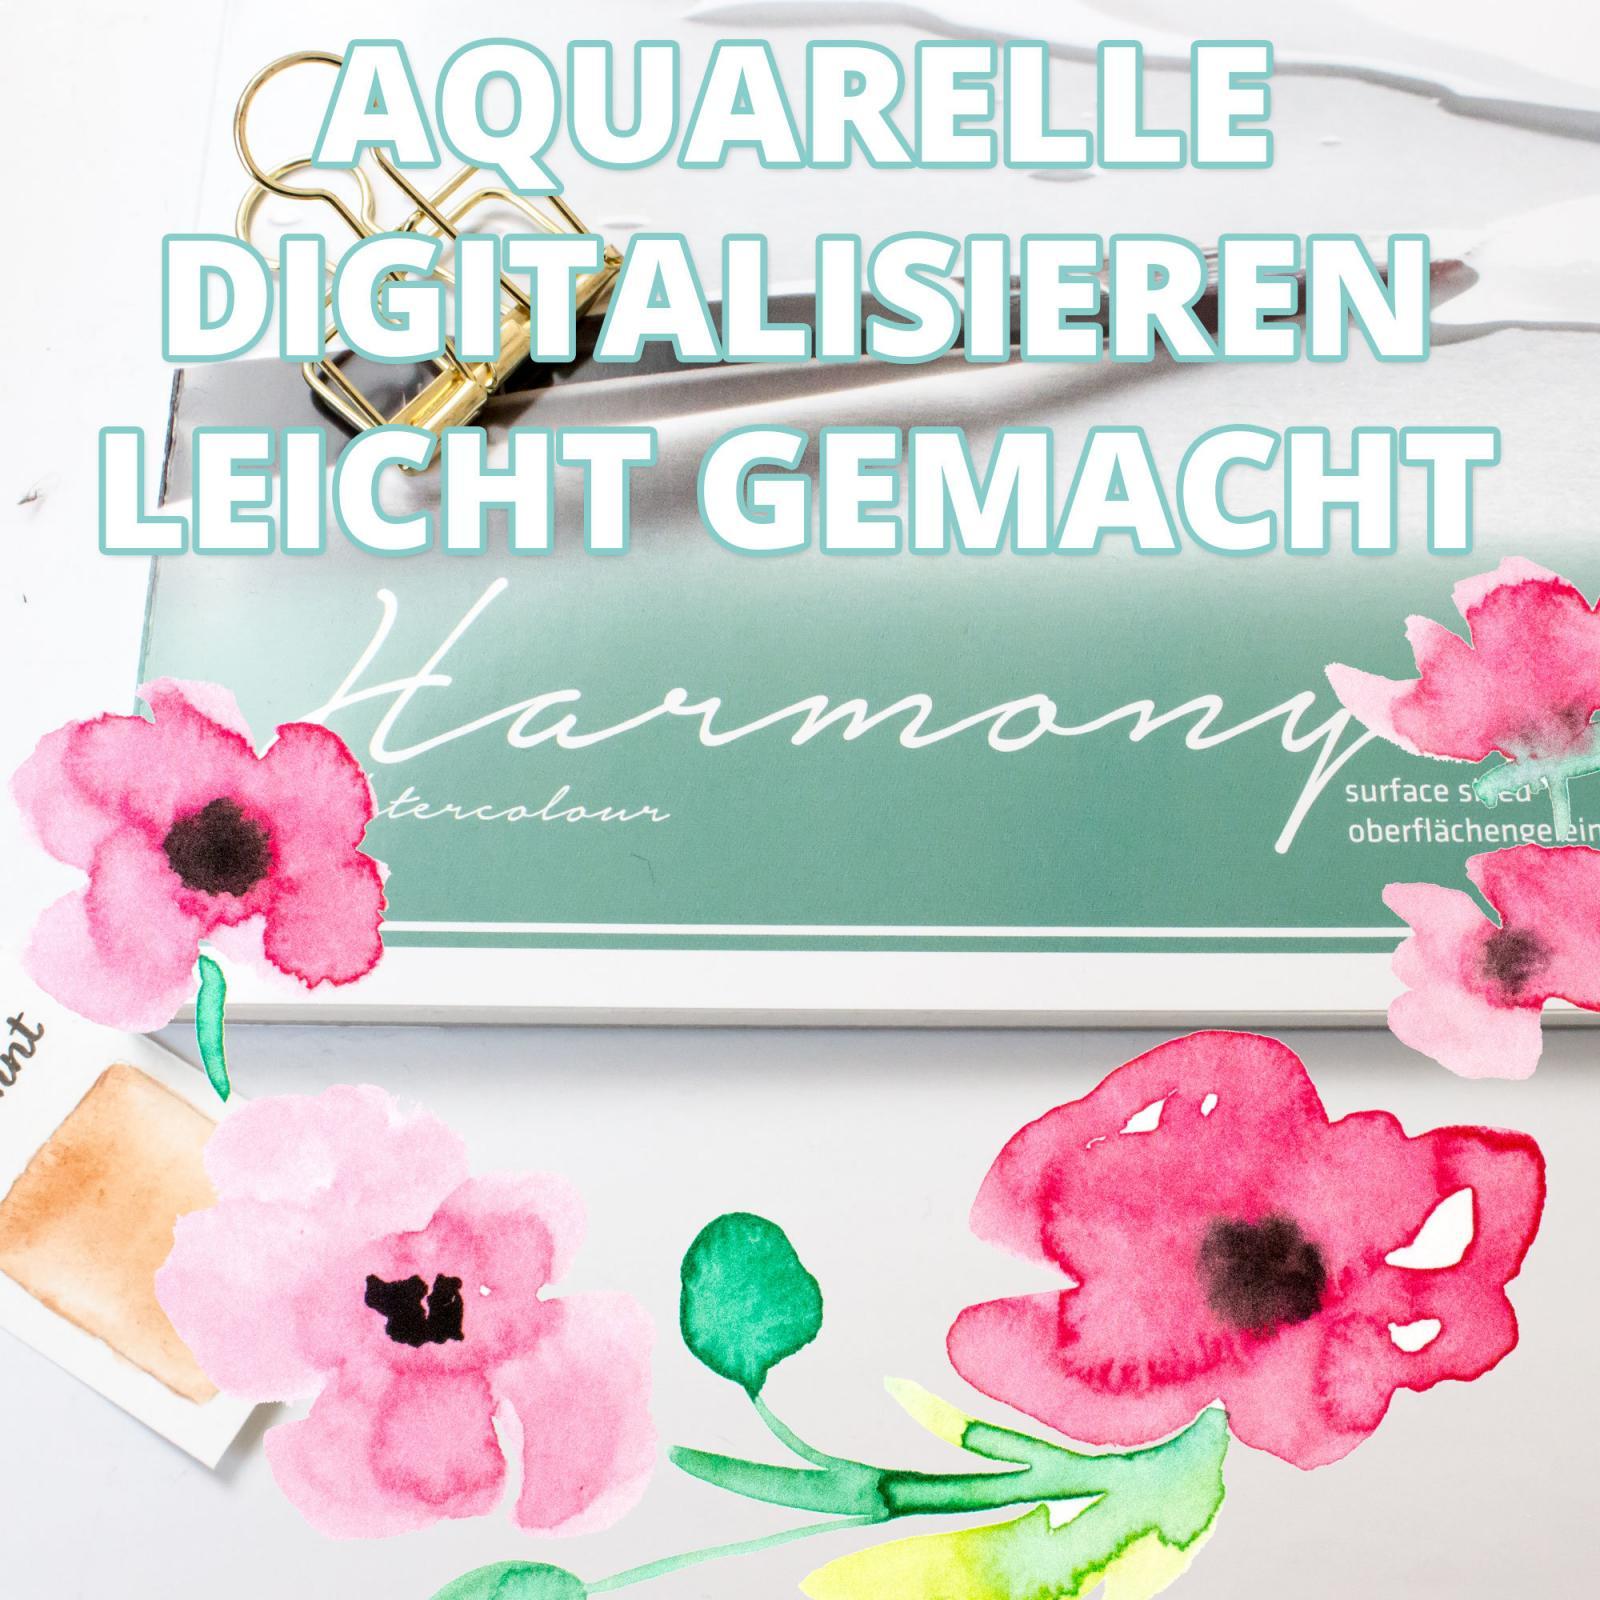 Hahnemühle Harmony Aquarellpapier | Aquarelle digitalisieren leicht gemacht | Testbericht mit Video von farbcafe.de